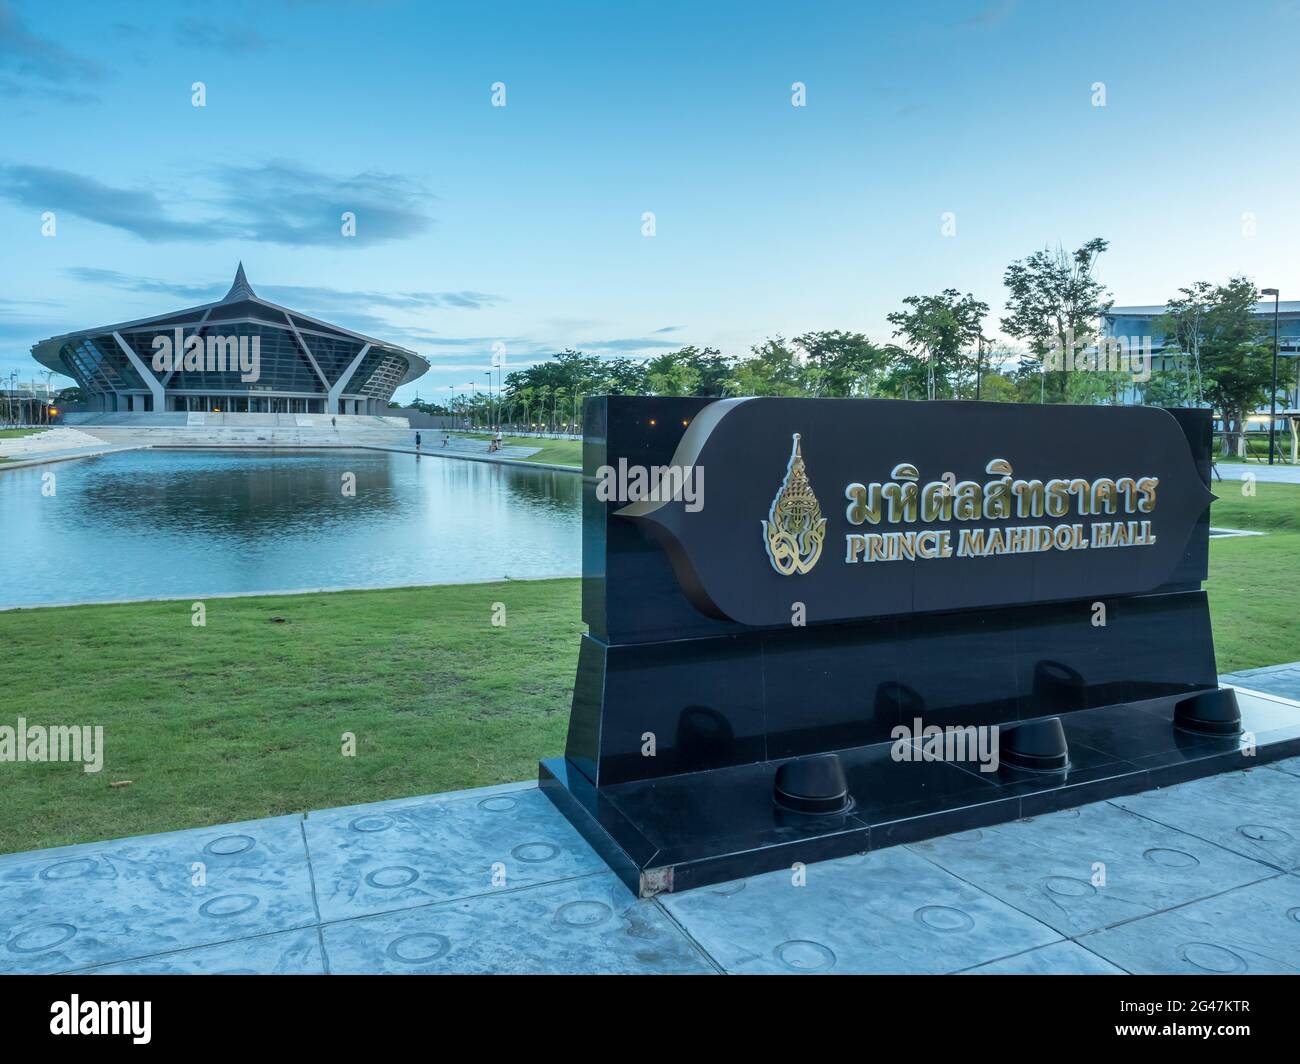 NAKORNPATHOM - 9 AGOSTO: La Sala del Principe Mahidol nel campus di Salaya dell'università di Mahidol a Nakornpathom, Thailandia, è stata presa il 9 agosto 2015. Foto Stock